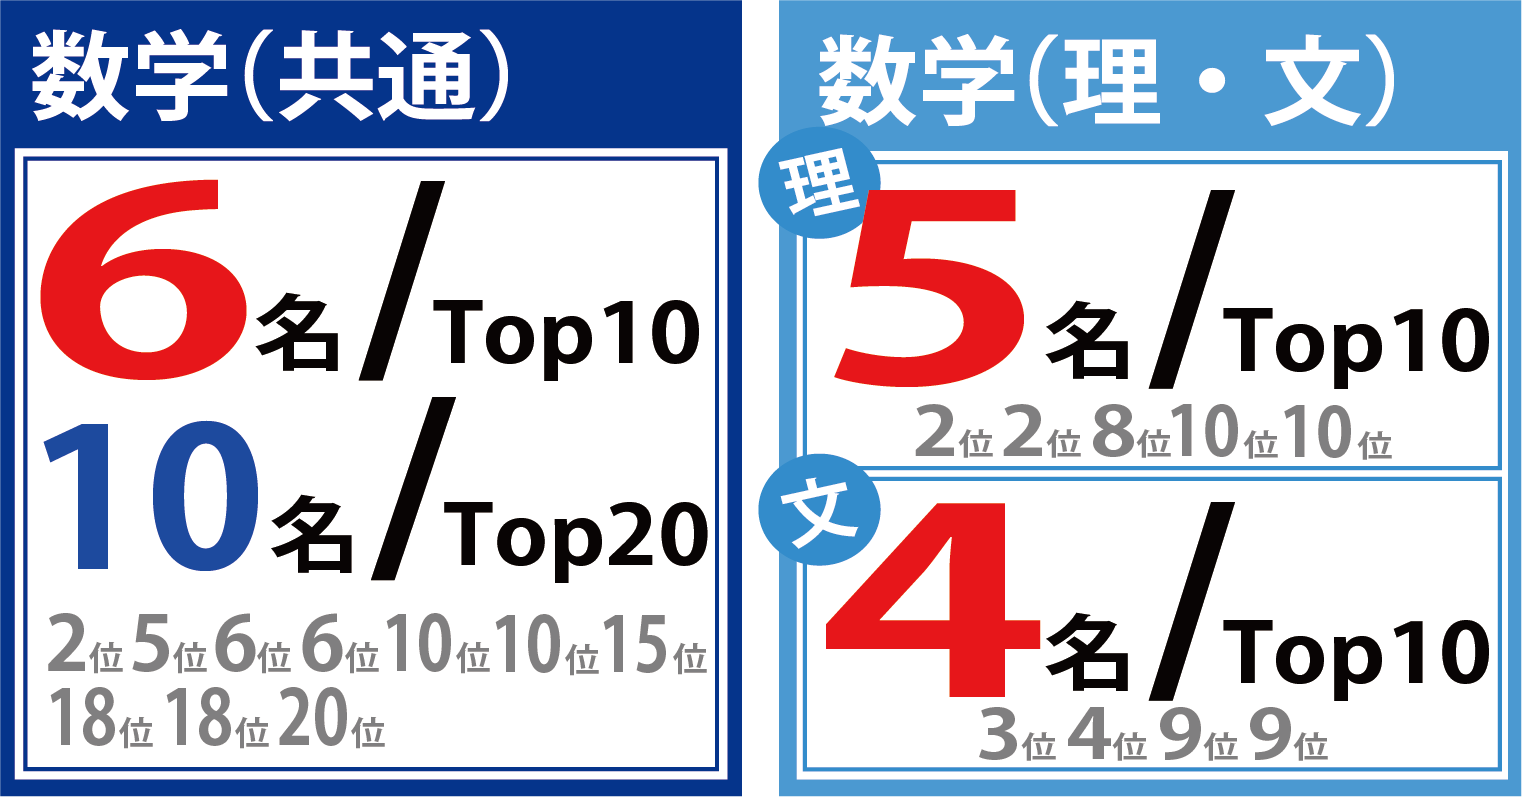 数学（共通）６名/Top10 10名/Top20
数学 理系 5名/Top10 文系 ４名/Top10